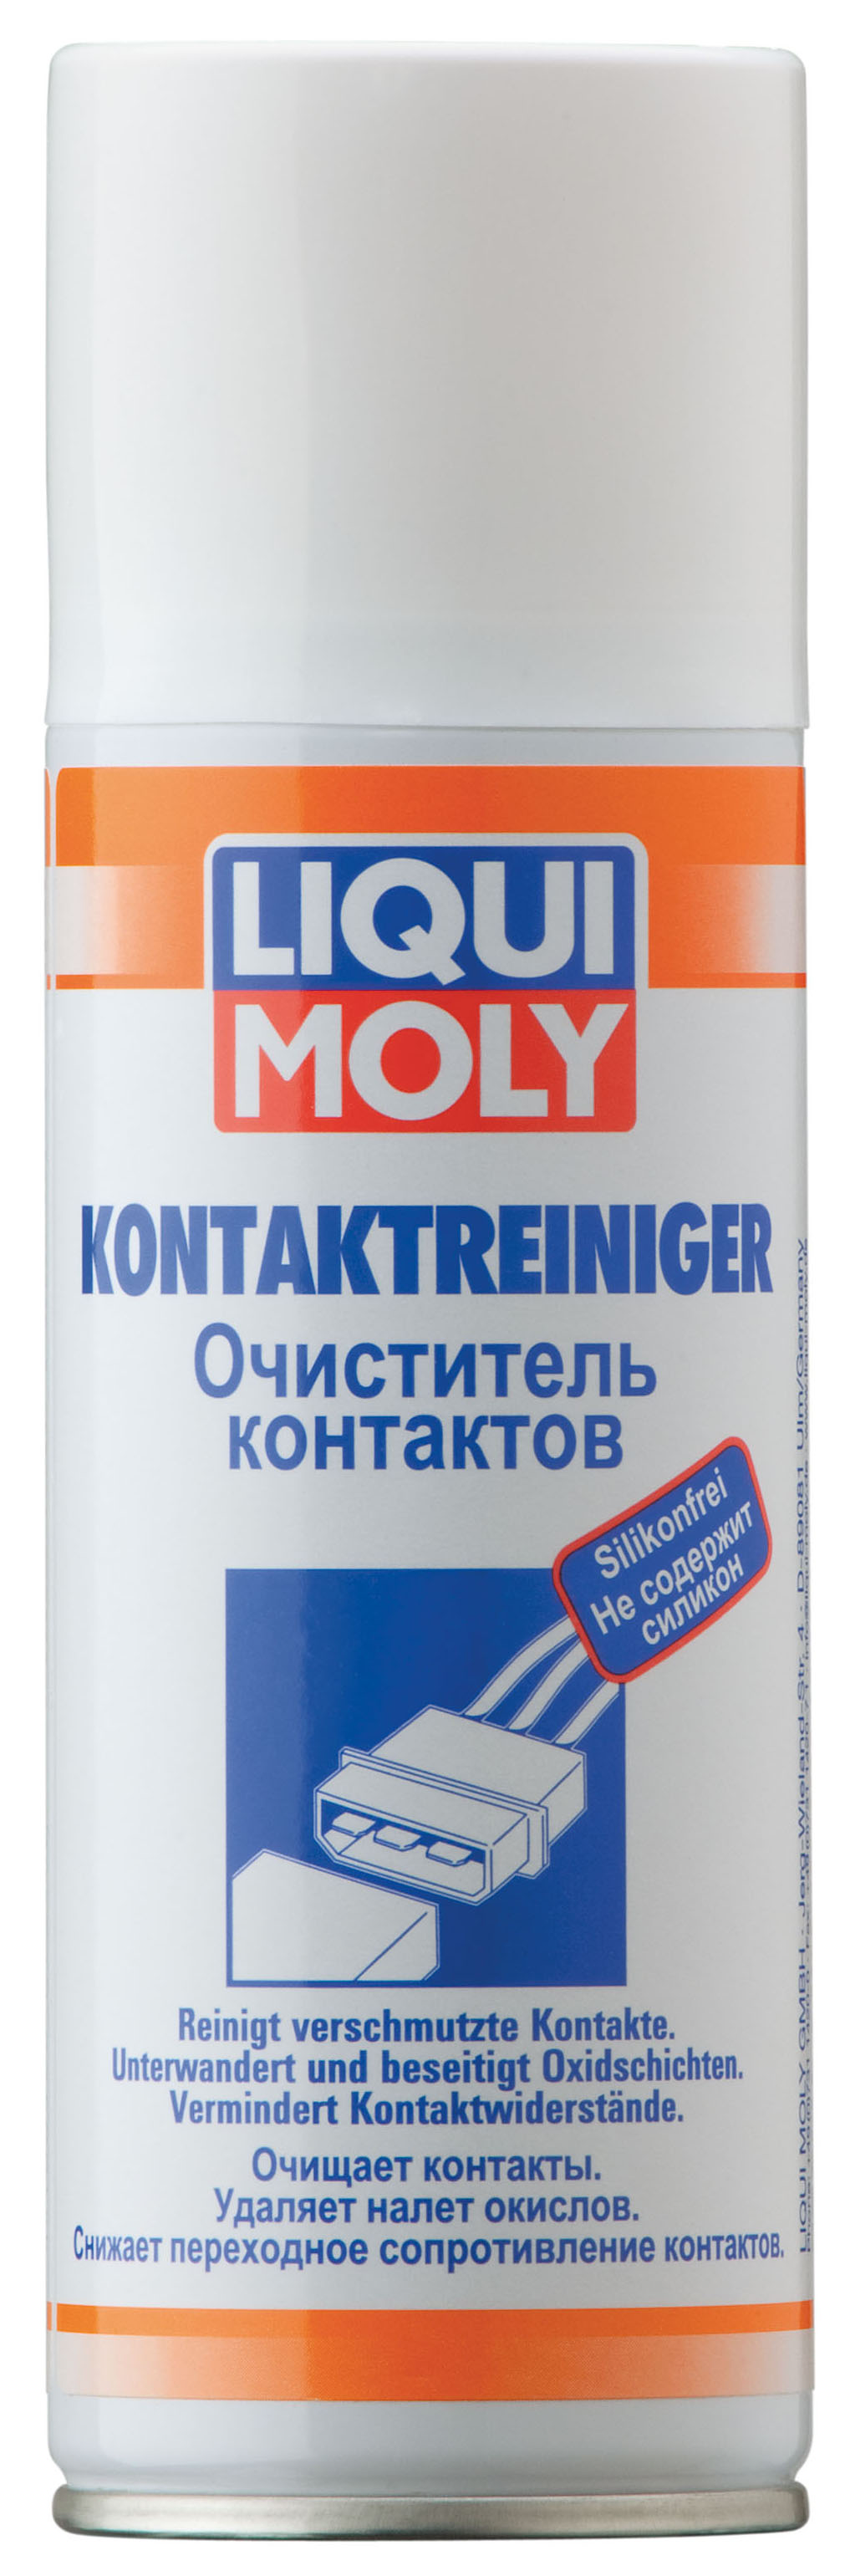 Очиститель контактов LIQUI MOLY Kontaktreiniger (0,2 литра)